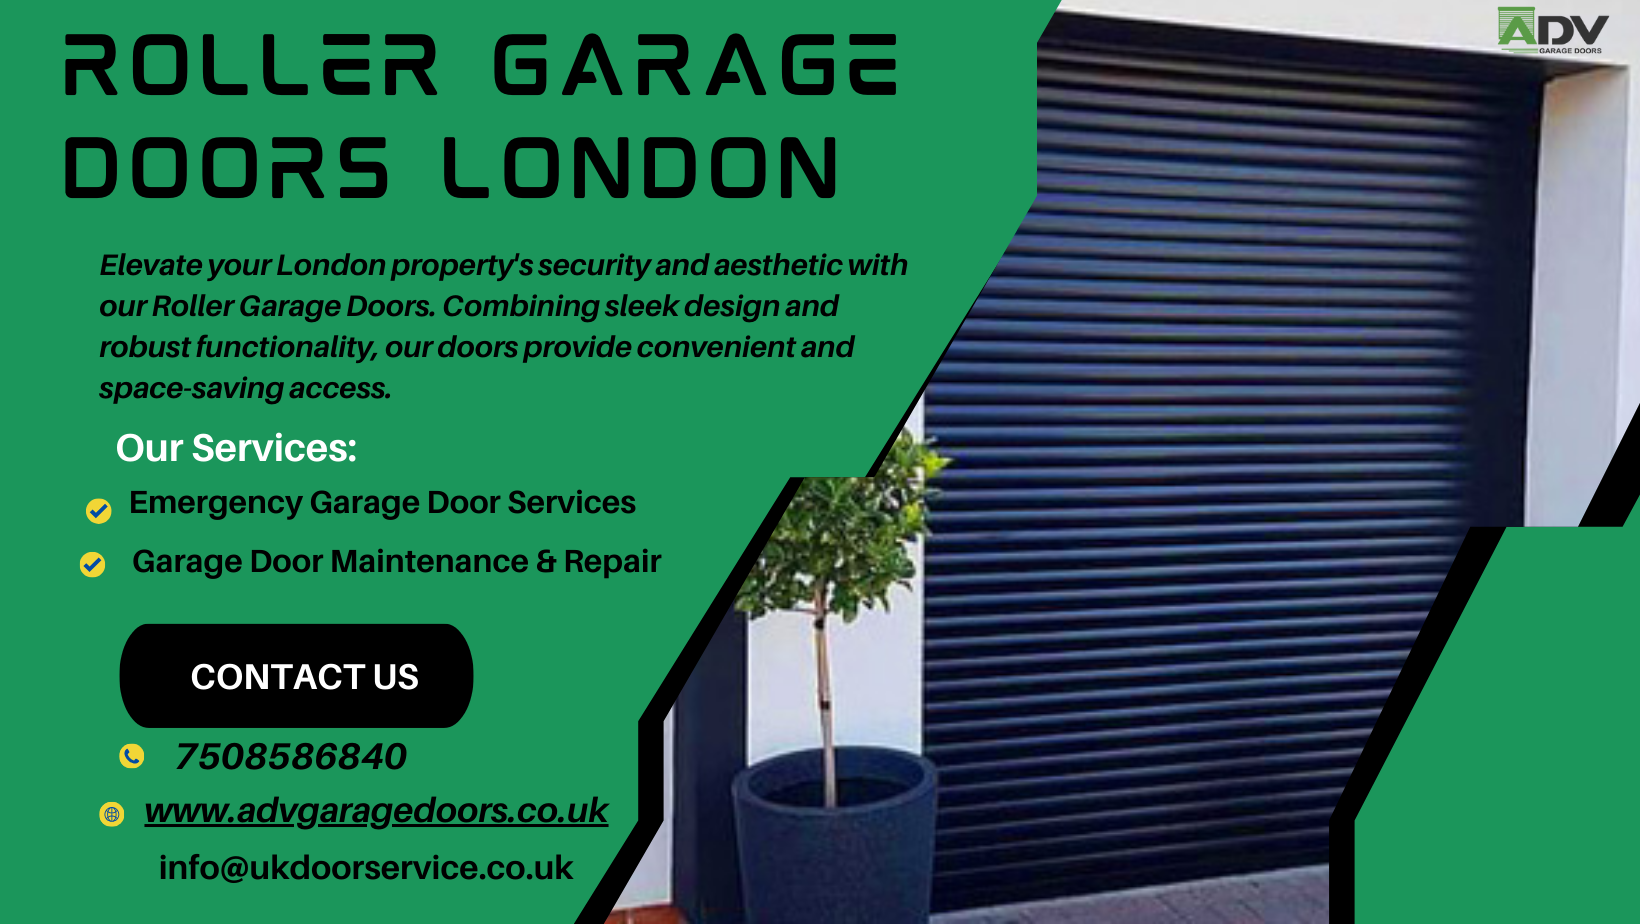 Read The Beginner’s Guide To Roller Garage Doors In London